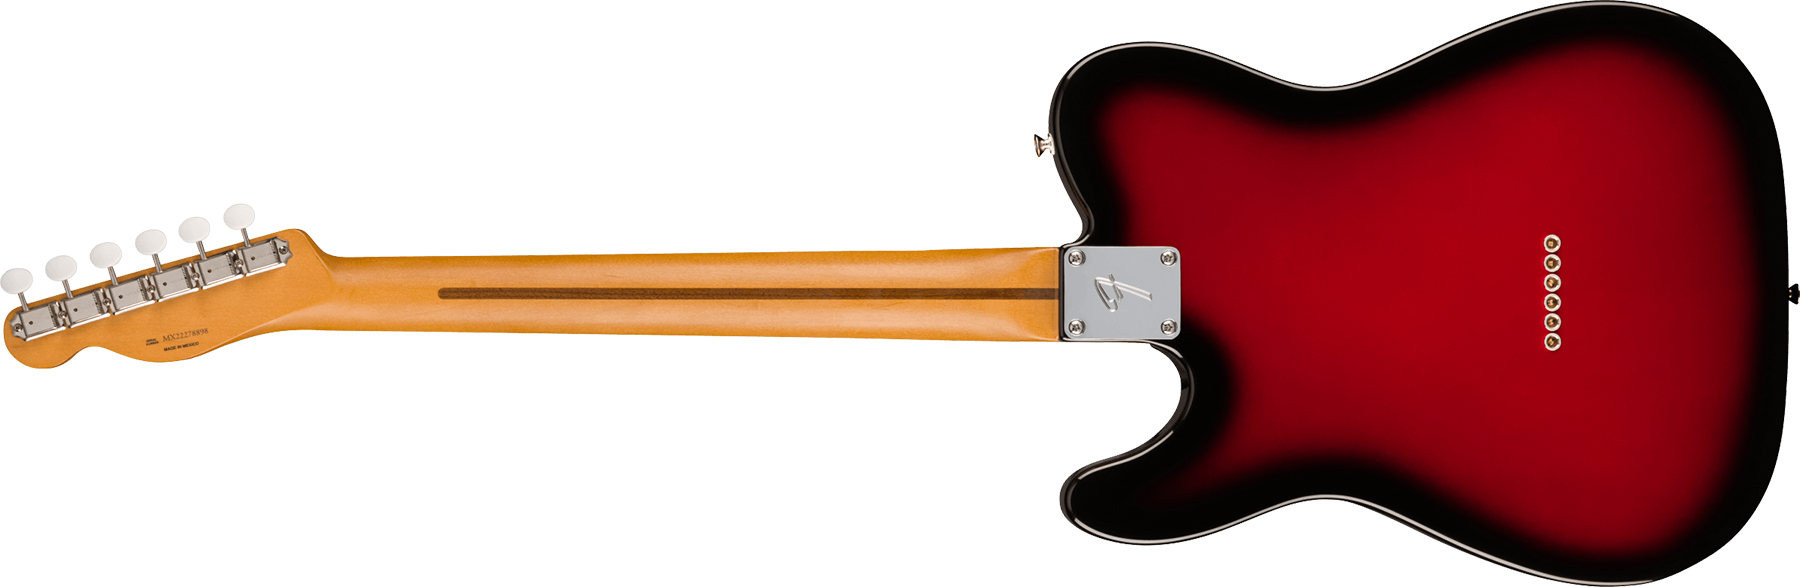 Fender Tele Gold Foil Ltd Mex 2mh Ht Eb - Candy Apple Burst - Guitarra eléctrica con forma de tel - Variation 1